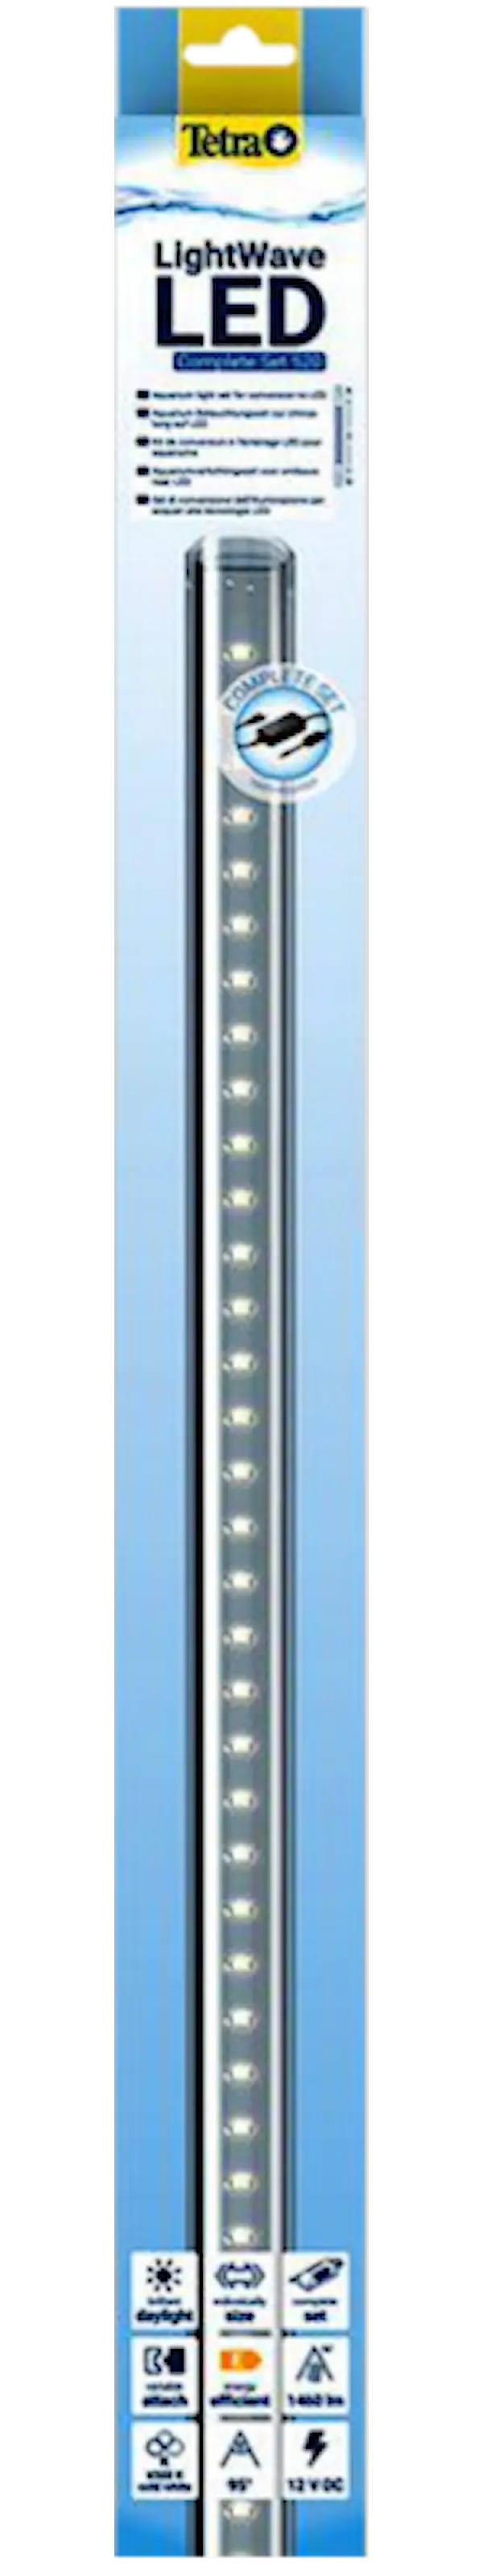 LightWave LED Single Light, 830 - 910 mm